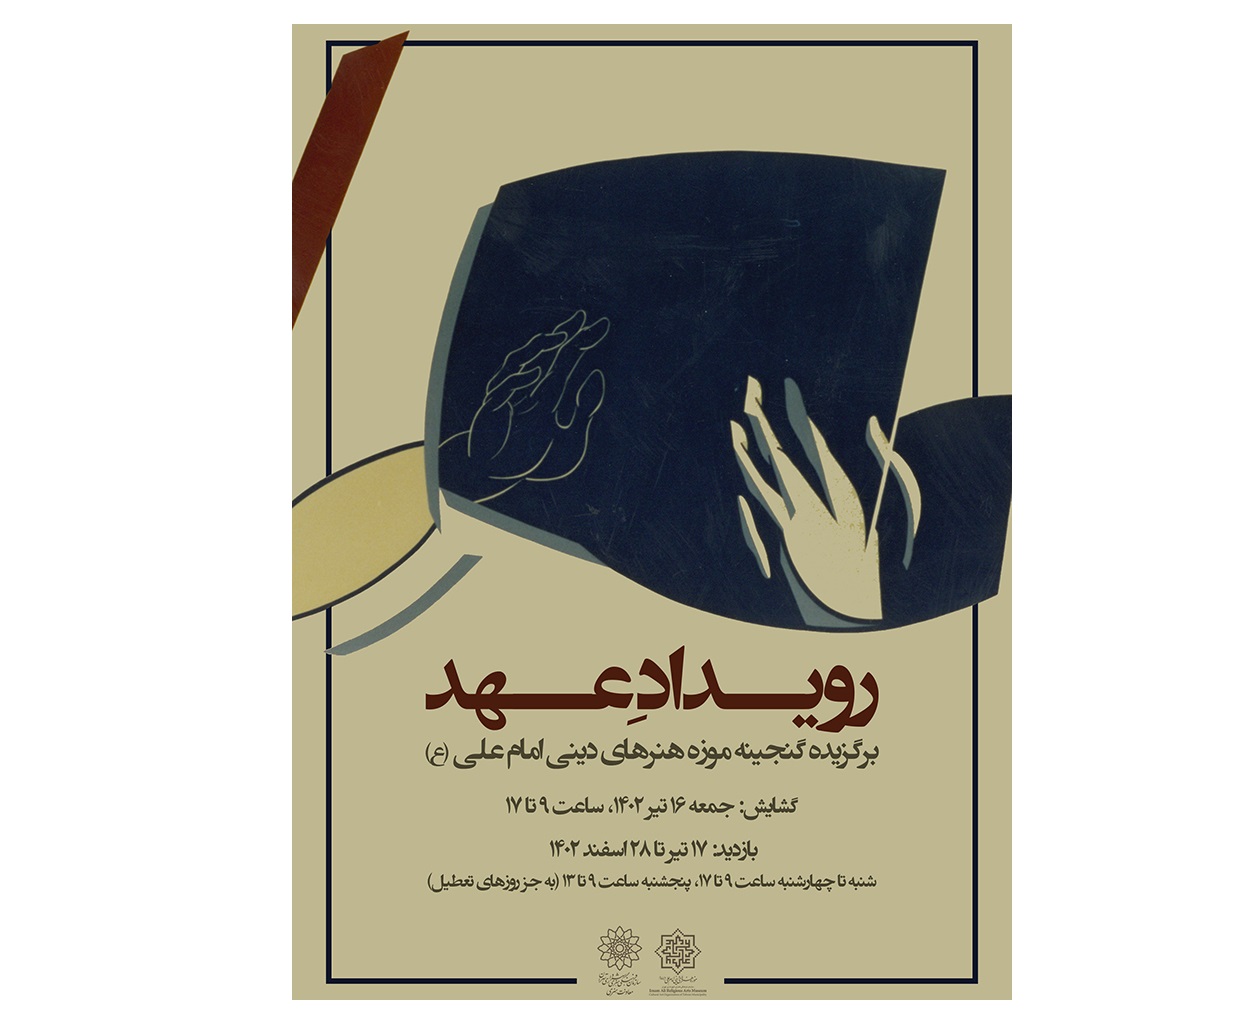 نمایشگاه  رویدادِ عهد در موزه هنرهای دینی امام علی (ع)